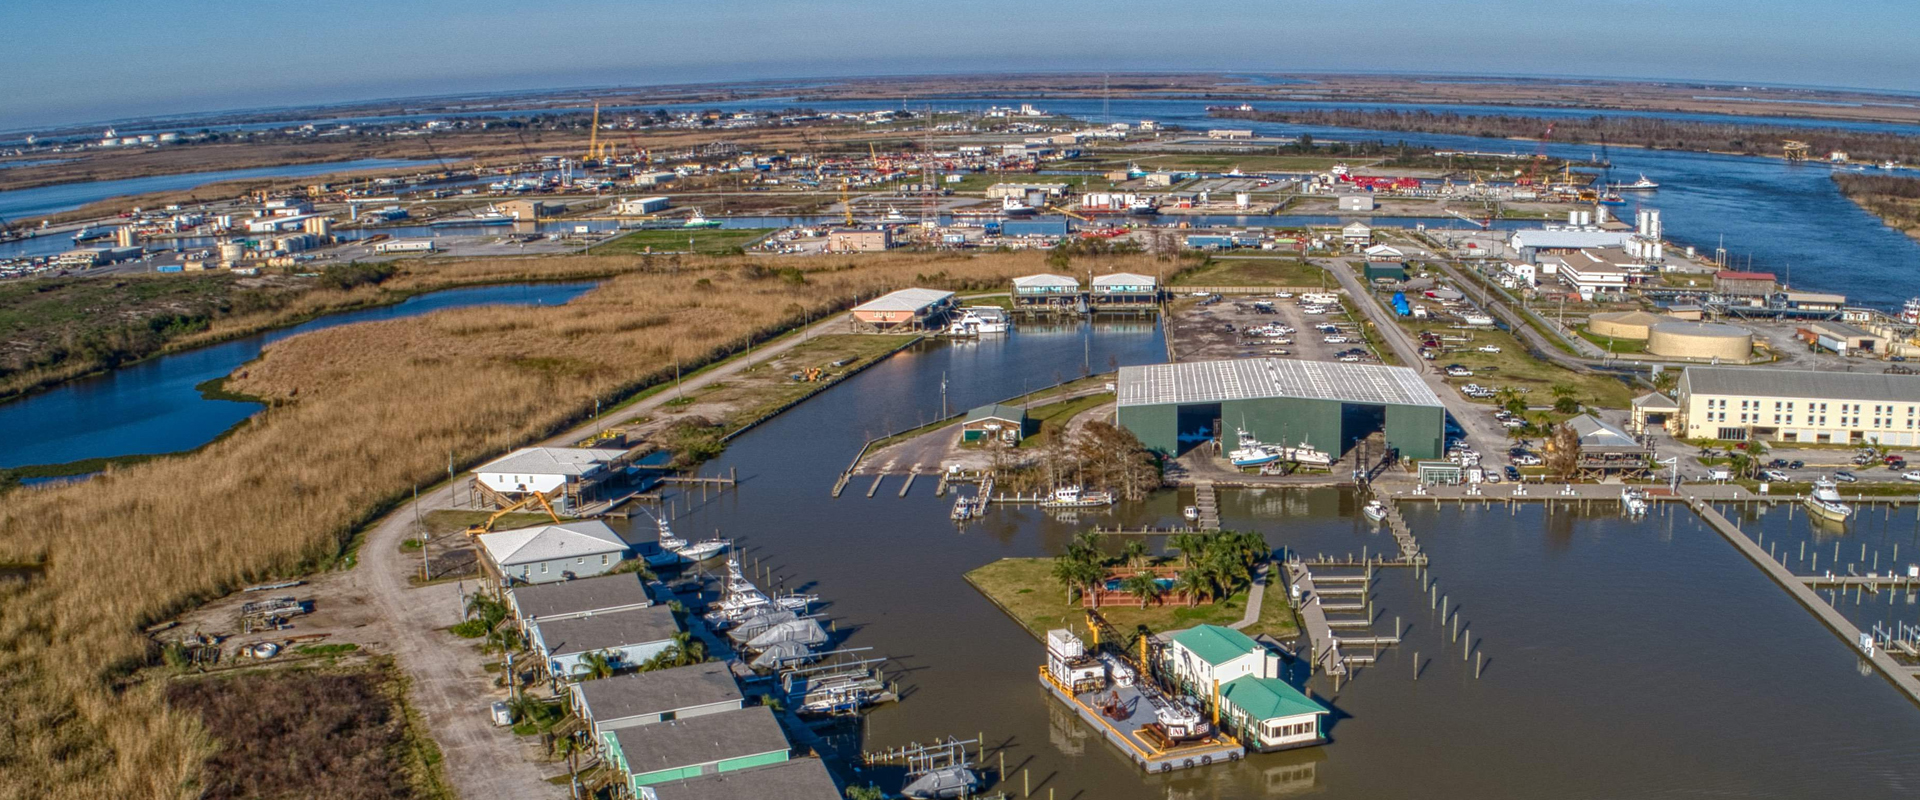 Image of Venice Louisiana marina